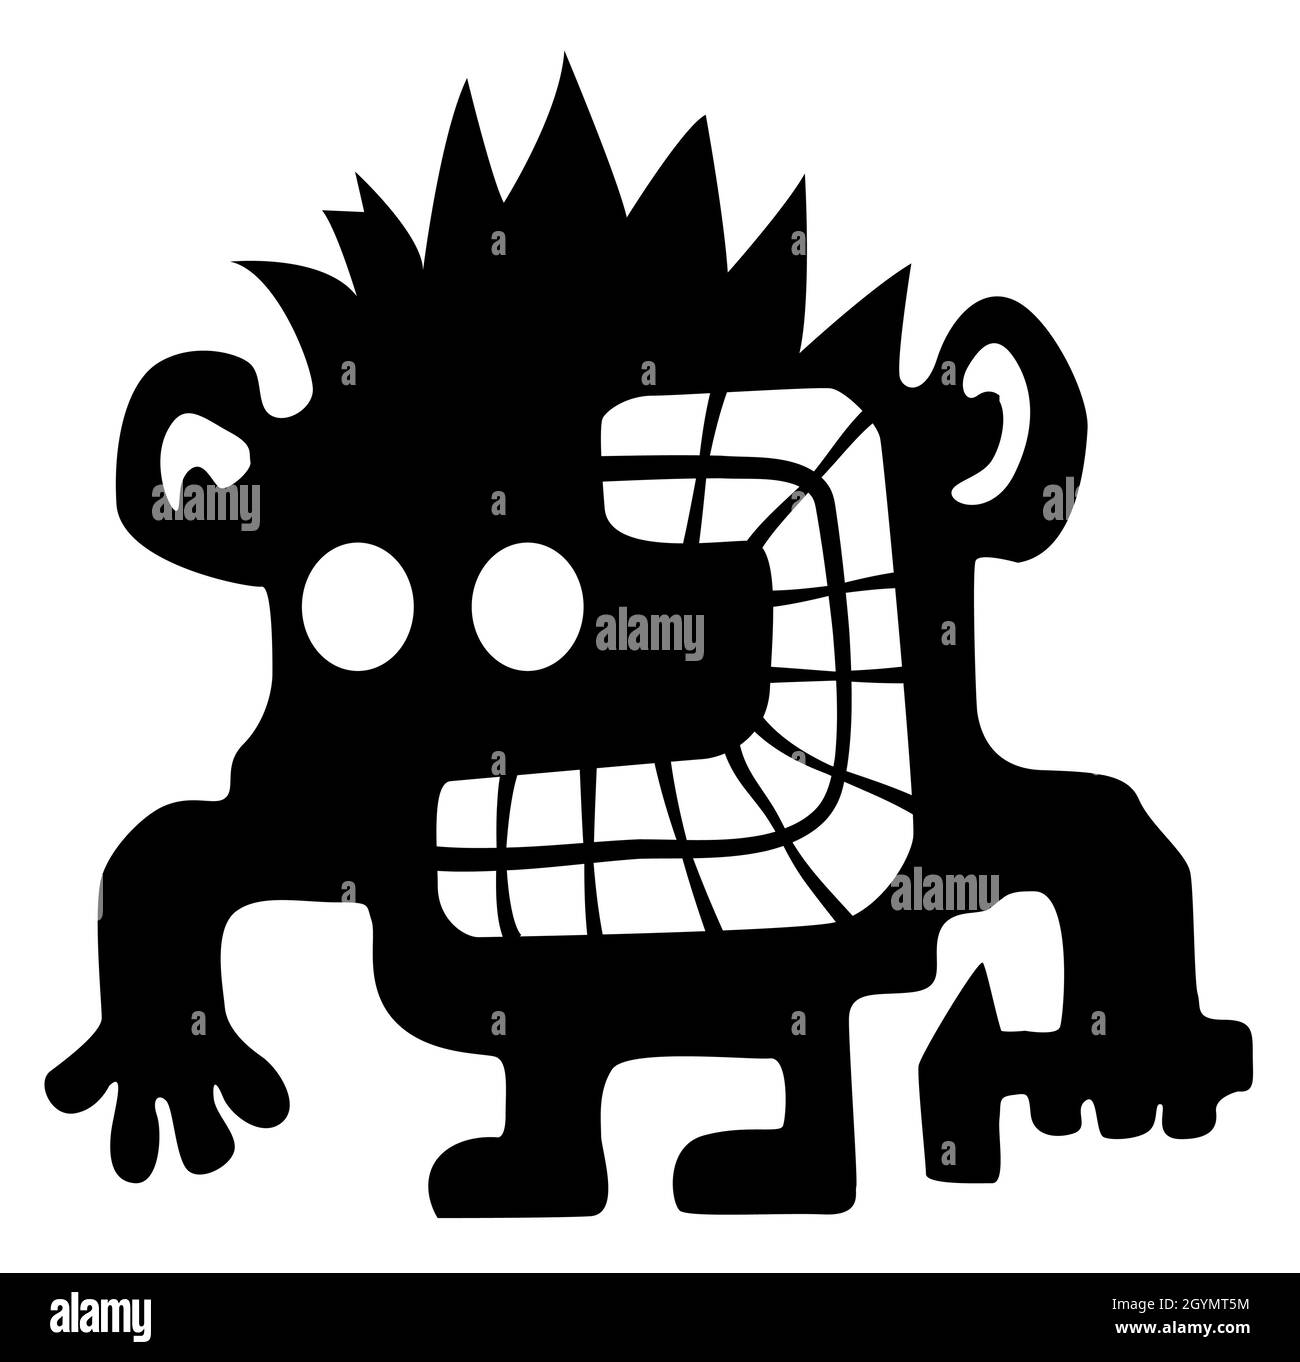 Crazy smasher cartoon personaggio nero silhouette, illustrazione vettoriale, orizzontale, isolato, su bianco Illustrazione Vettoriale